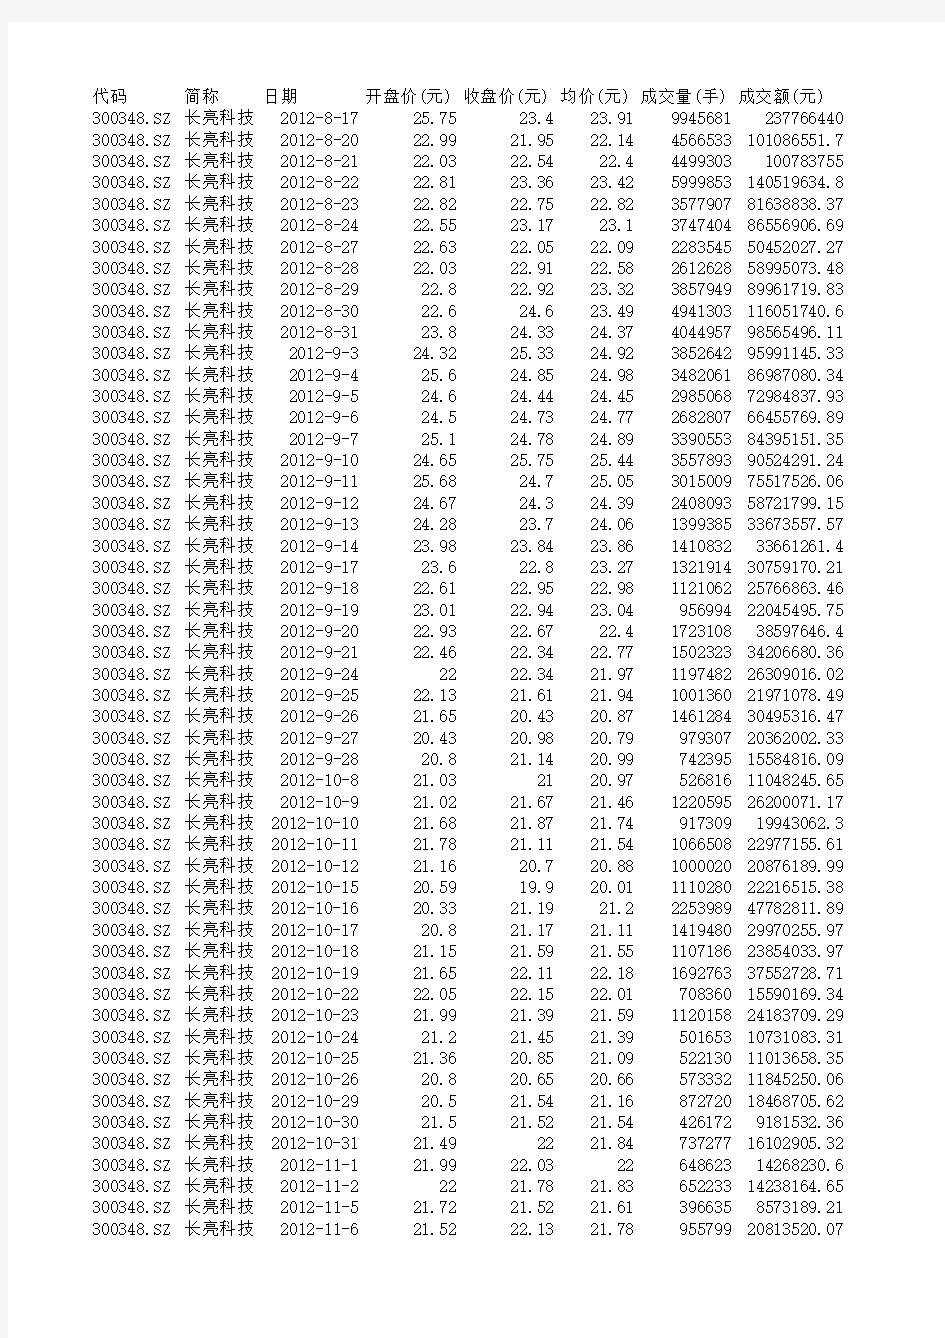 上市日-2013年12 长亮科技 股票数据